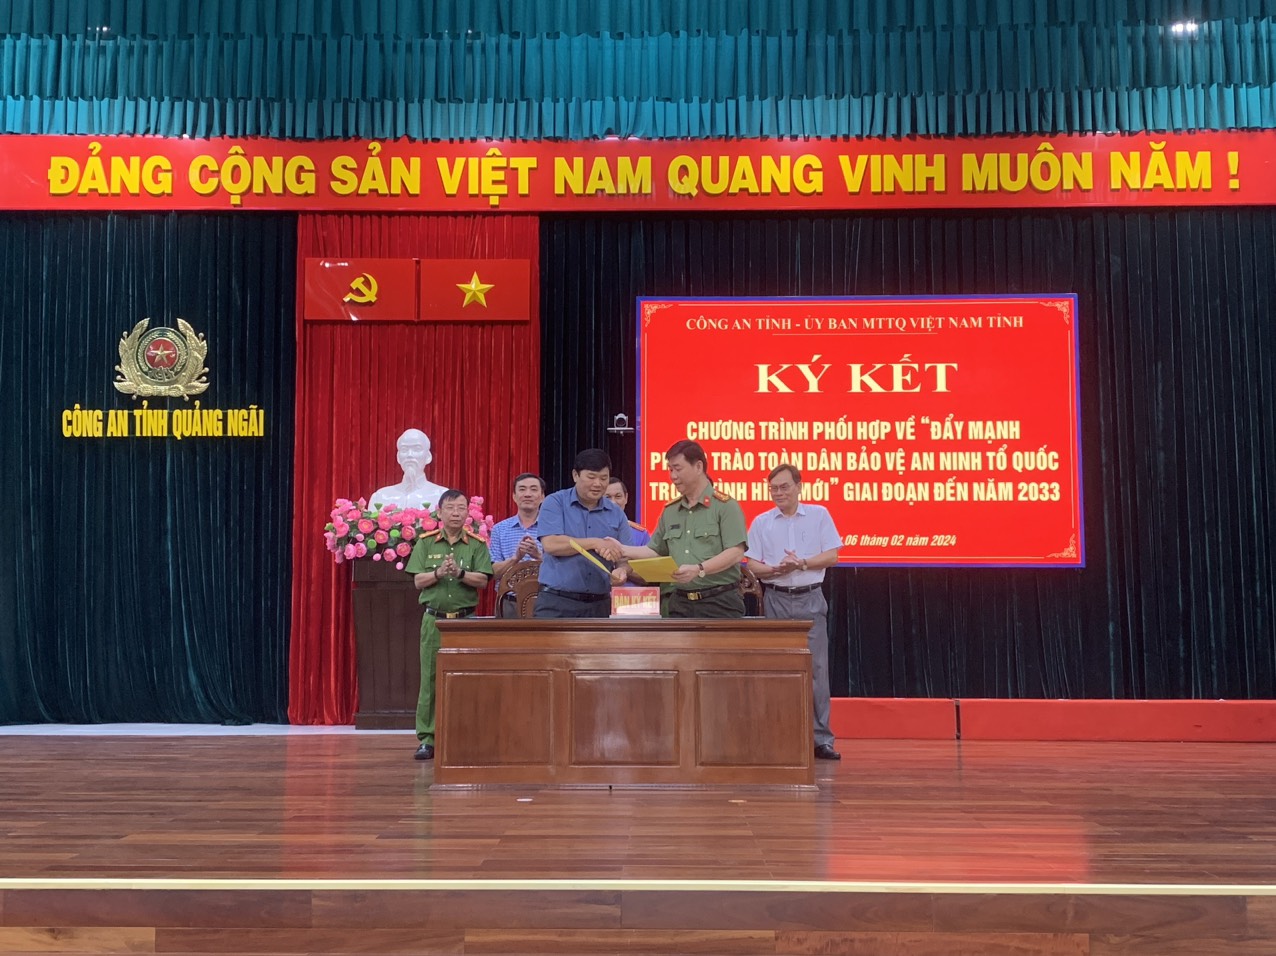 Ký kết chương trình phối hợp giữa Công an tỉnh với Ủy ban Mặt trận Tổ quốc Việt Nam và các tổ chức thành viên về “đẩy mạnh phong trào toàn dân bảo vệ an ninh Tổ quốc trong tình hình mới” giai đoạn đến năm 2033